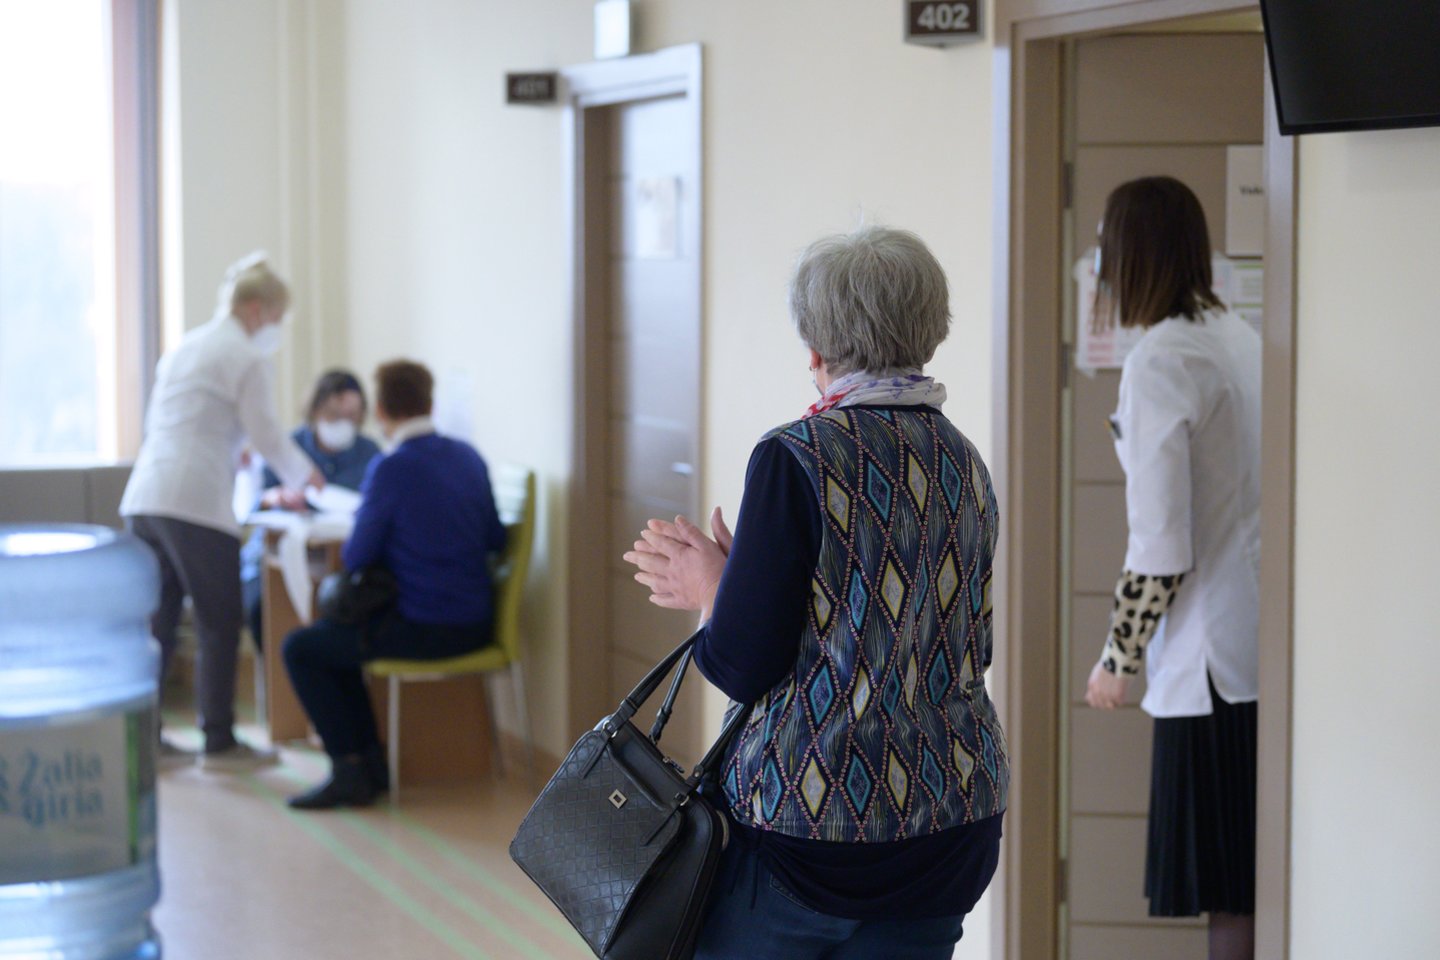 Penktadienį Vilniaus Karoliniškių poliklinikoje be registracijos gali pasiskiepyti visi senjorai vyresni nei 65 metų. <br>V.Skaraičio nuotr.